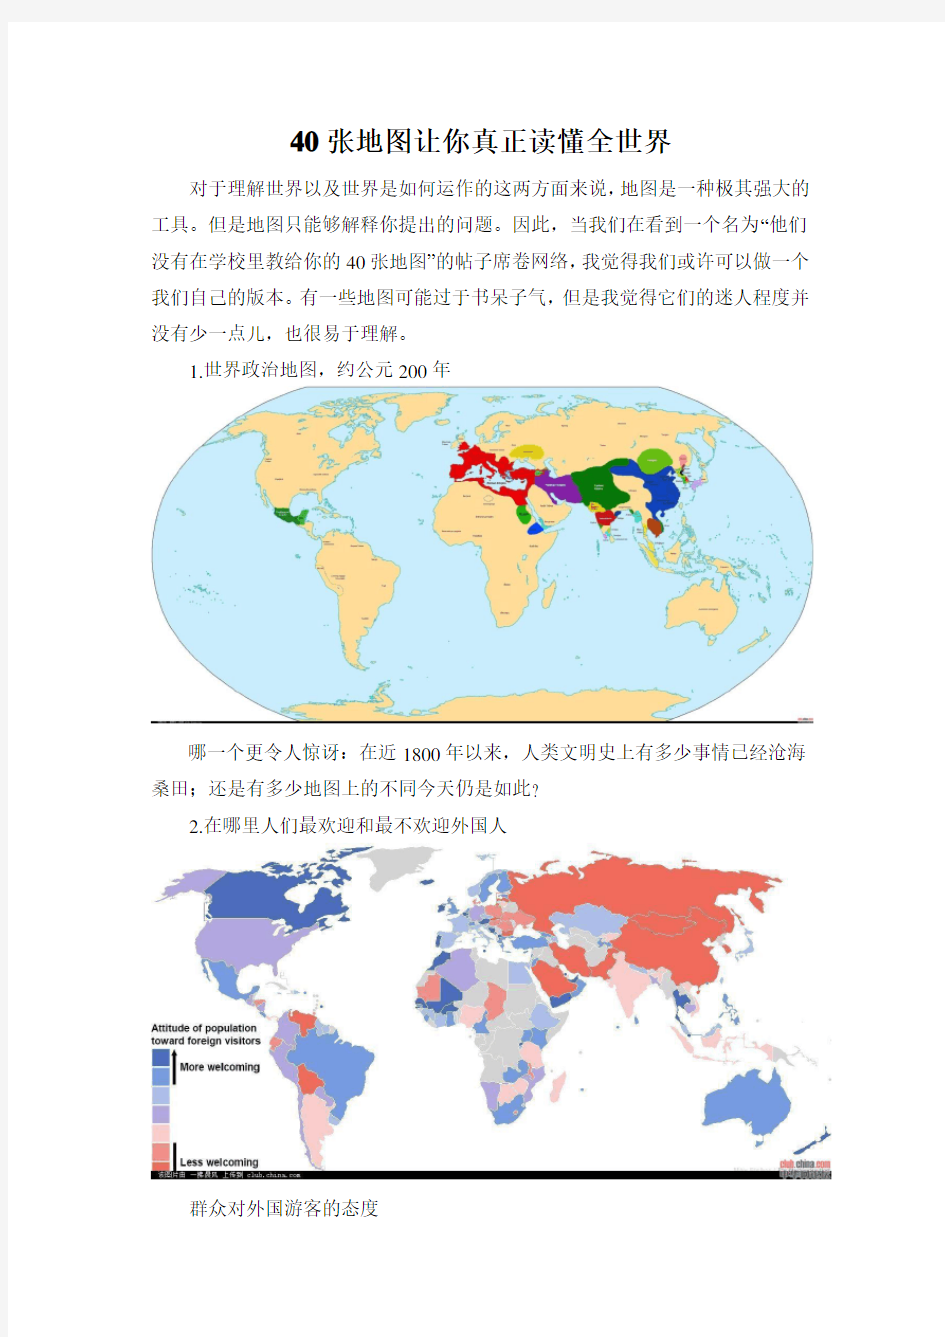 40张地图让你真正读懂全世界解析